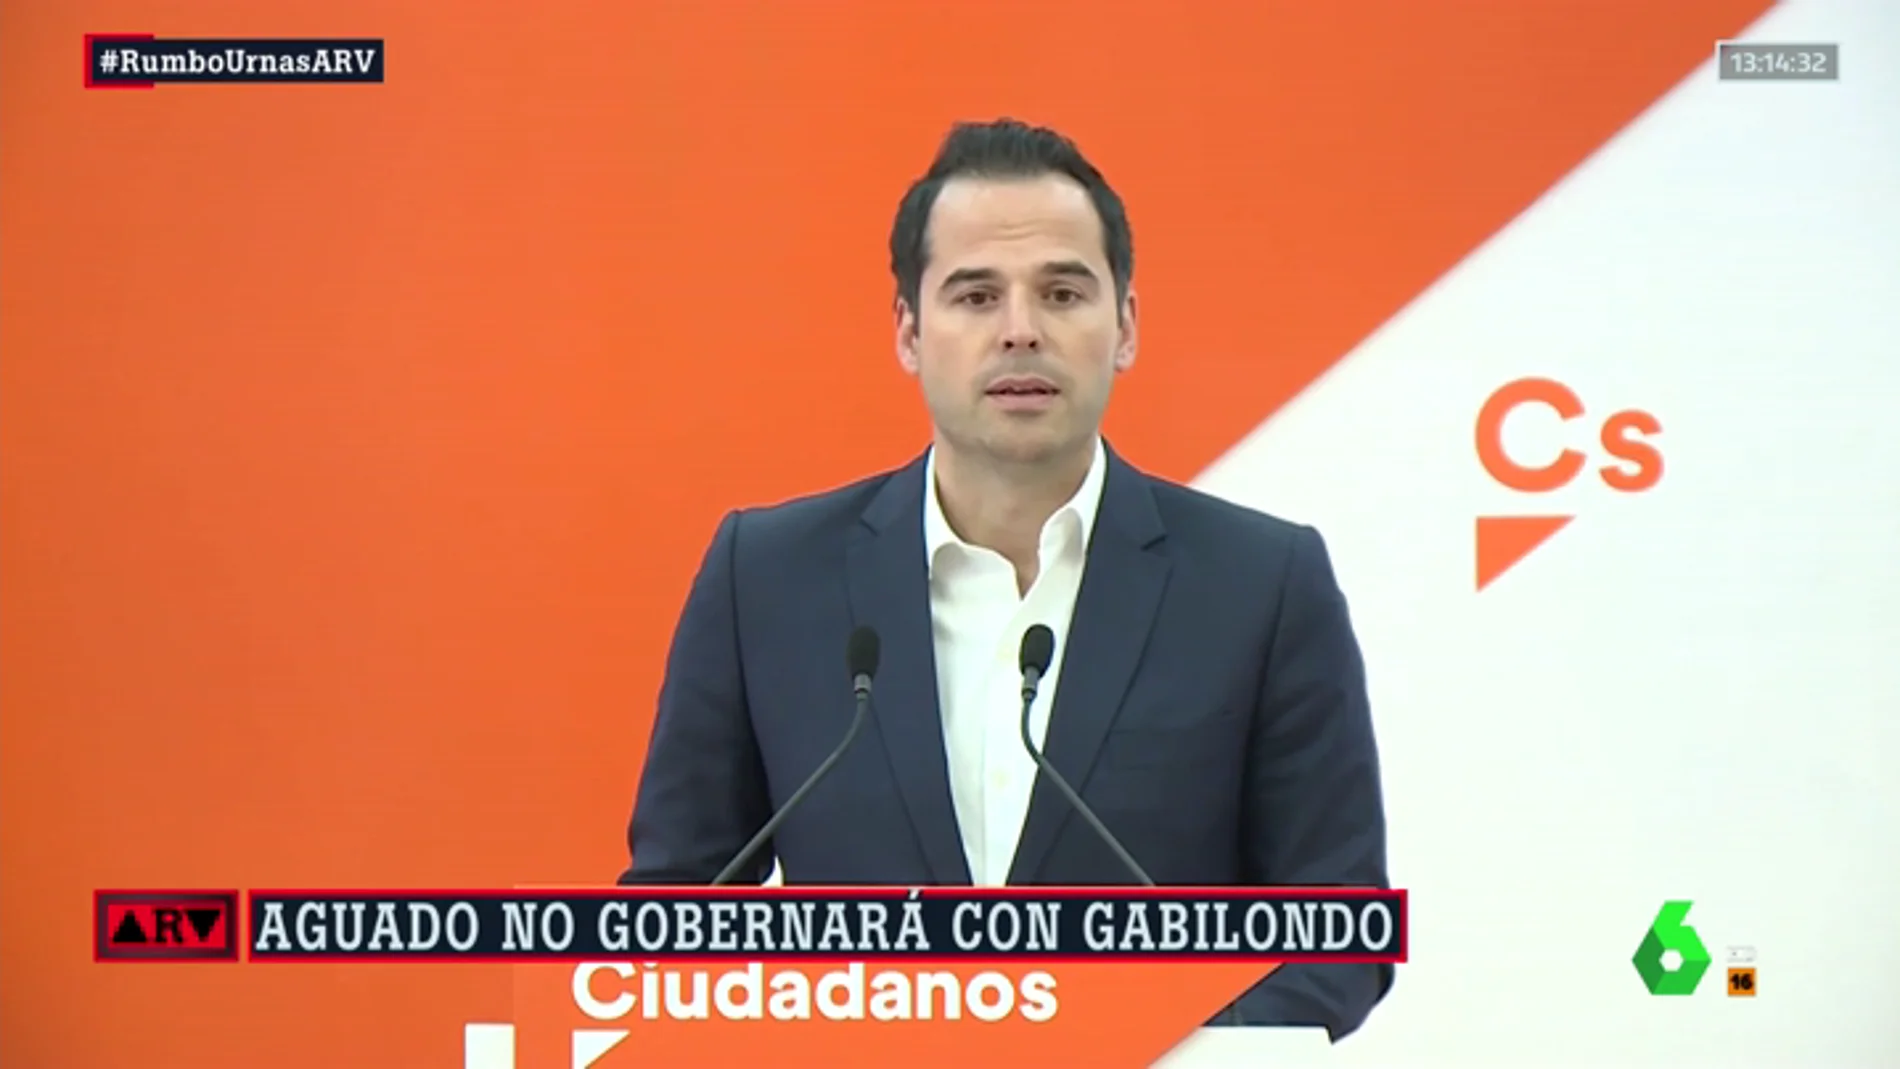 El candidato de Cs a la Comunidad de Madrid, Ignacio Aguado